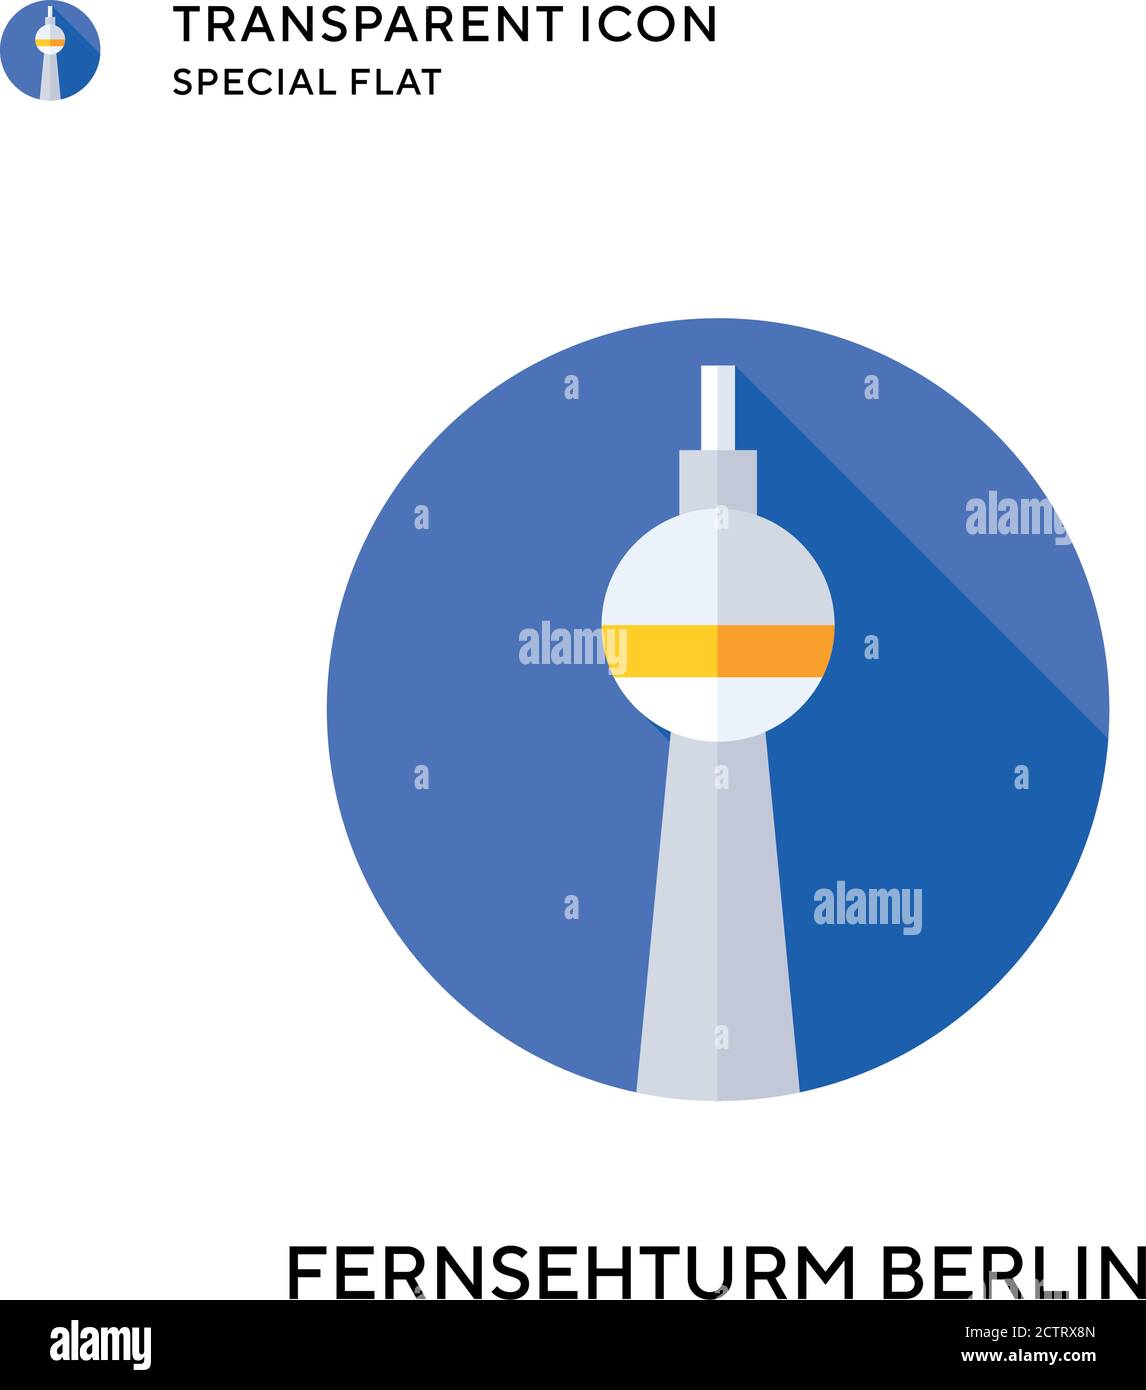 Fernsehturm berlin vecteur icône. Illustration de style plat. Vecteur EPS 10. Illustration de Vecteur